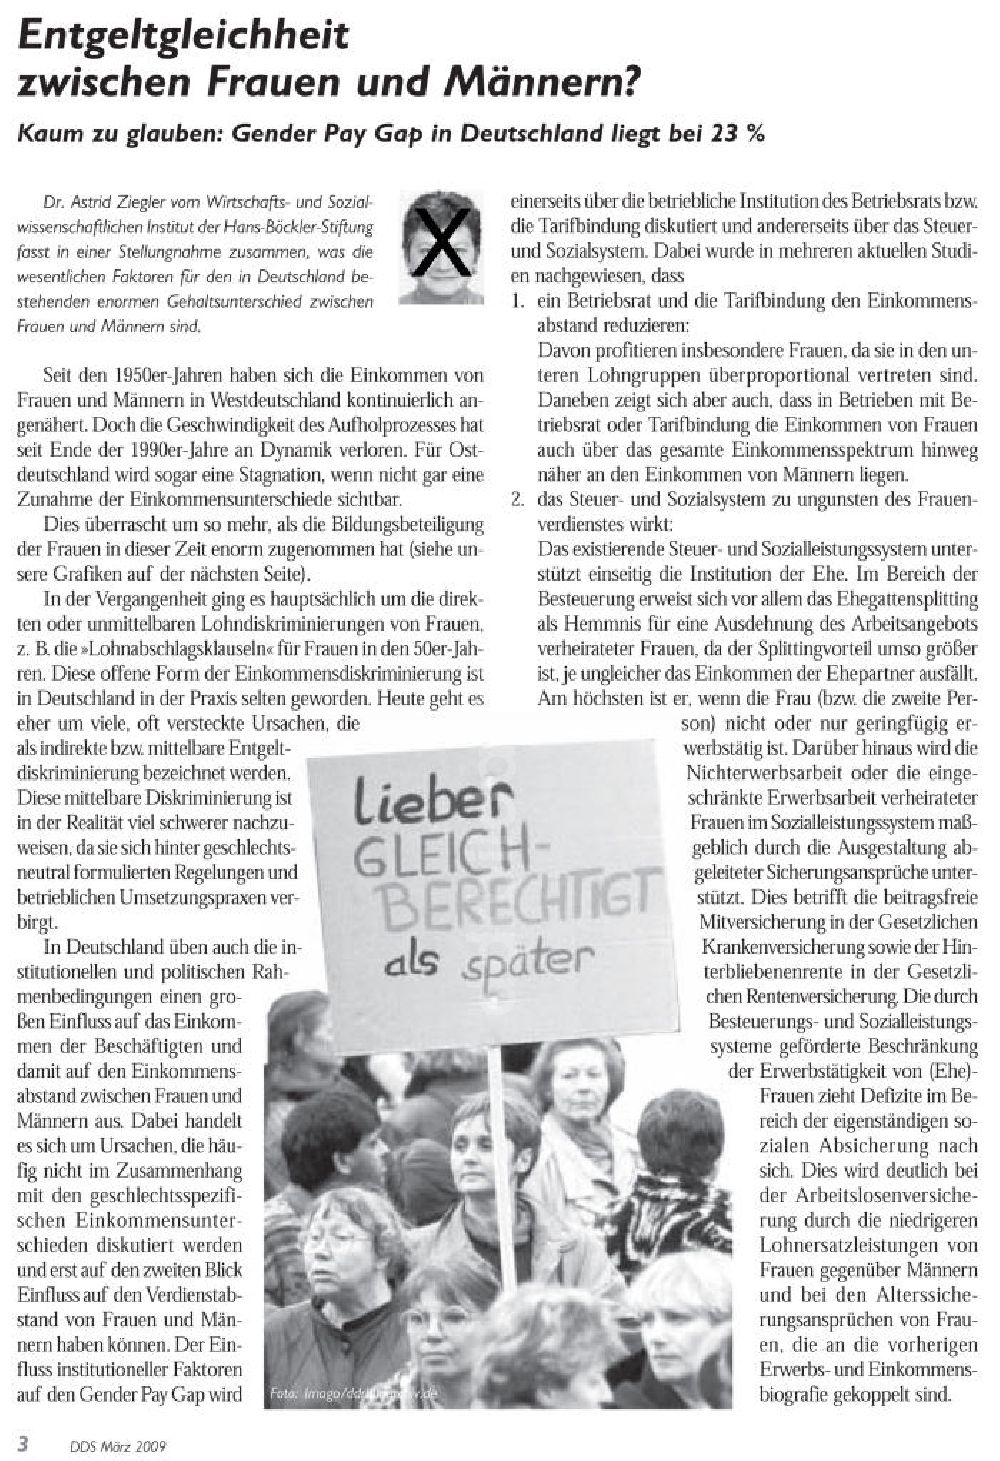 DDR-Bildarchiv: München - Bildverwendung im März 2009 Fachzeitschrift DDS